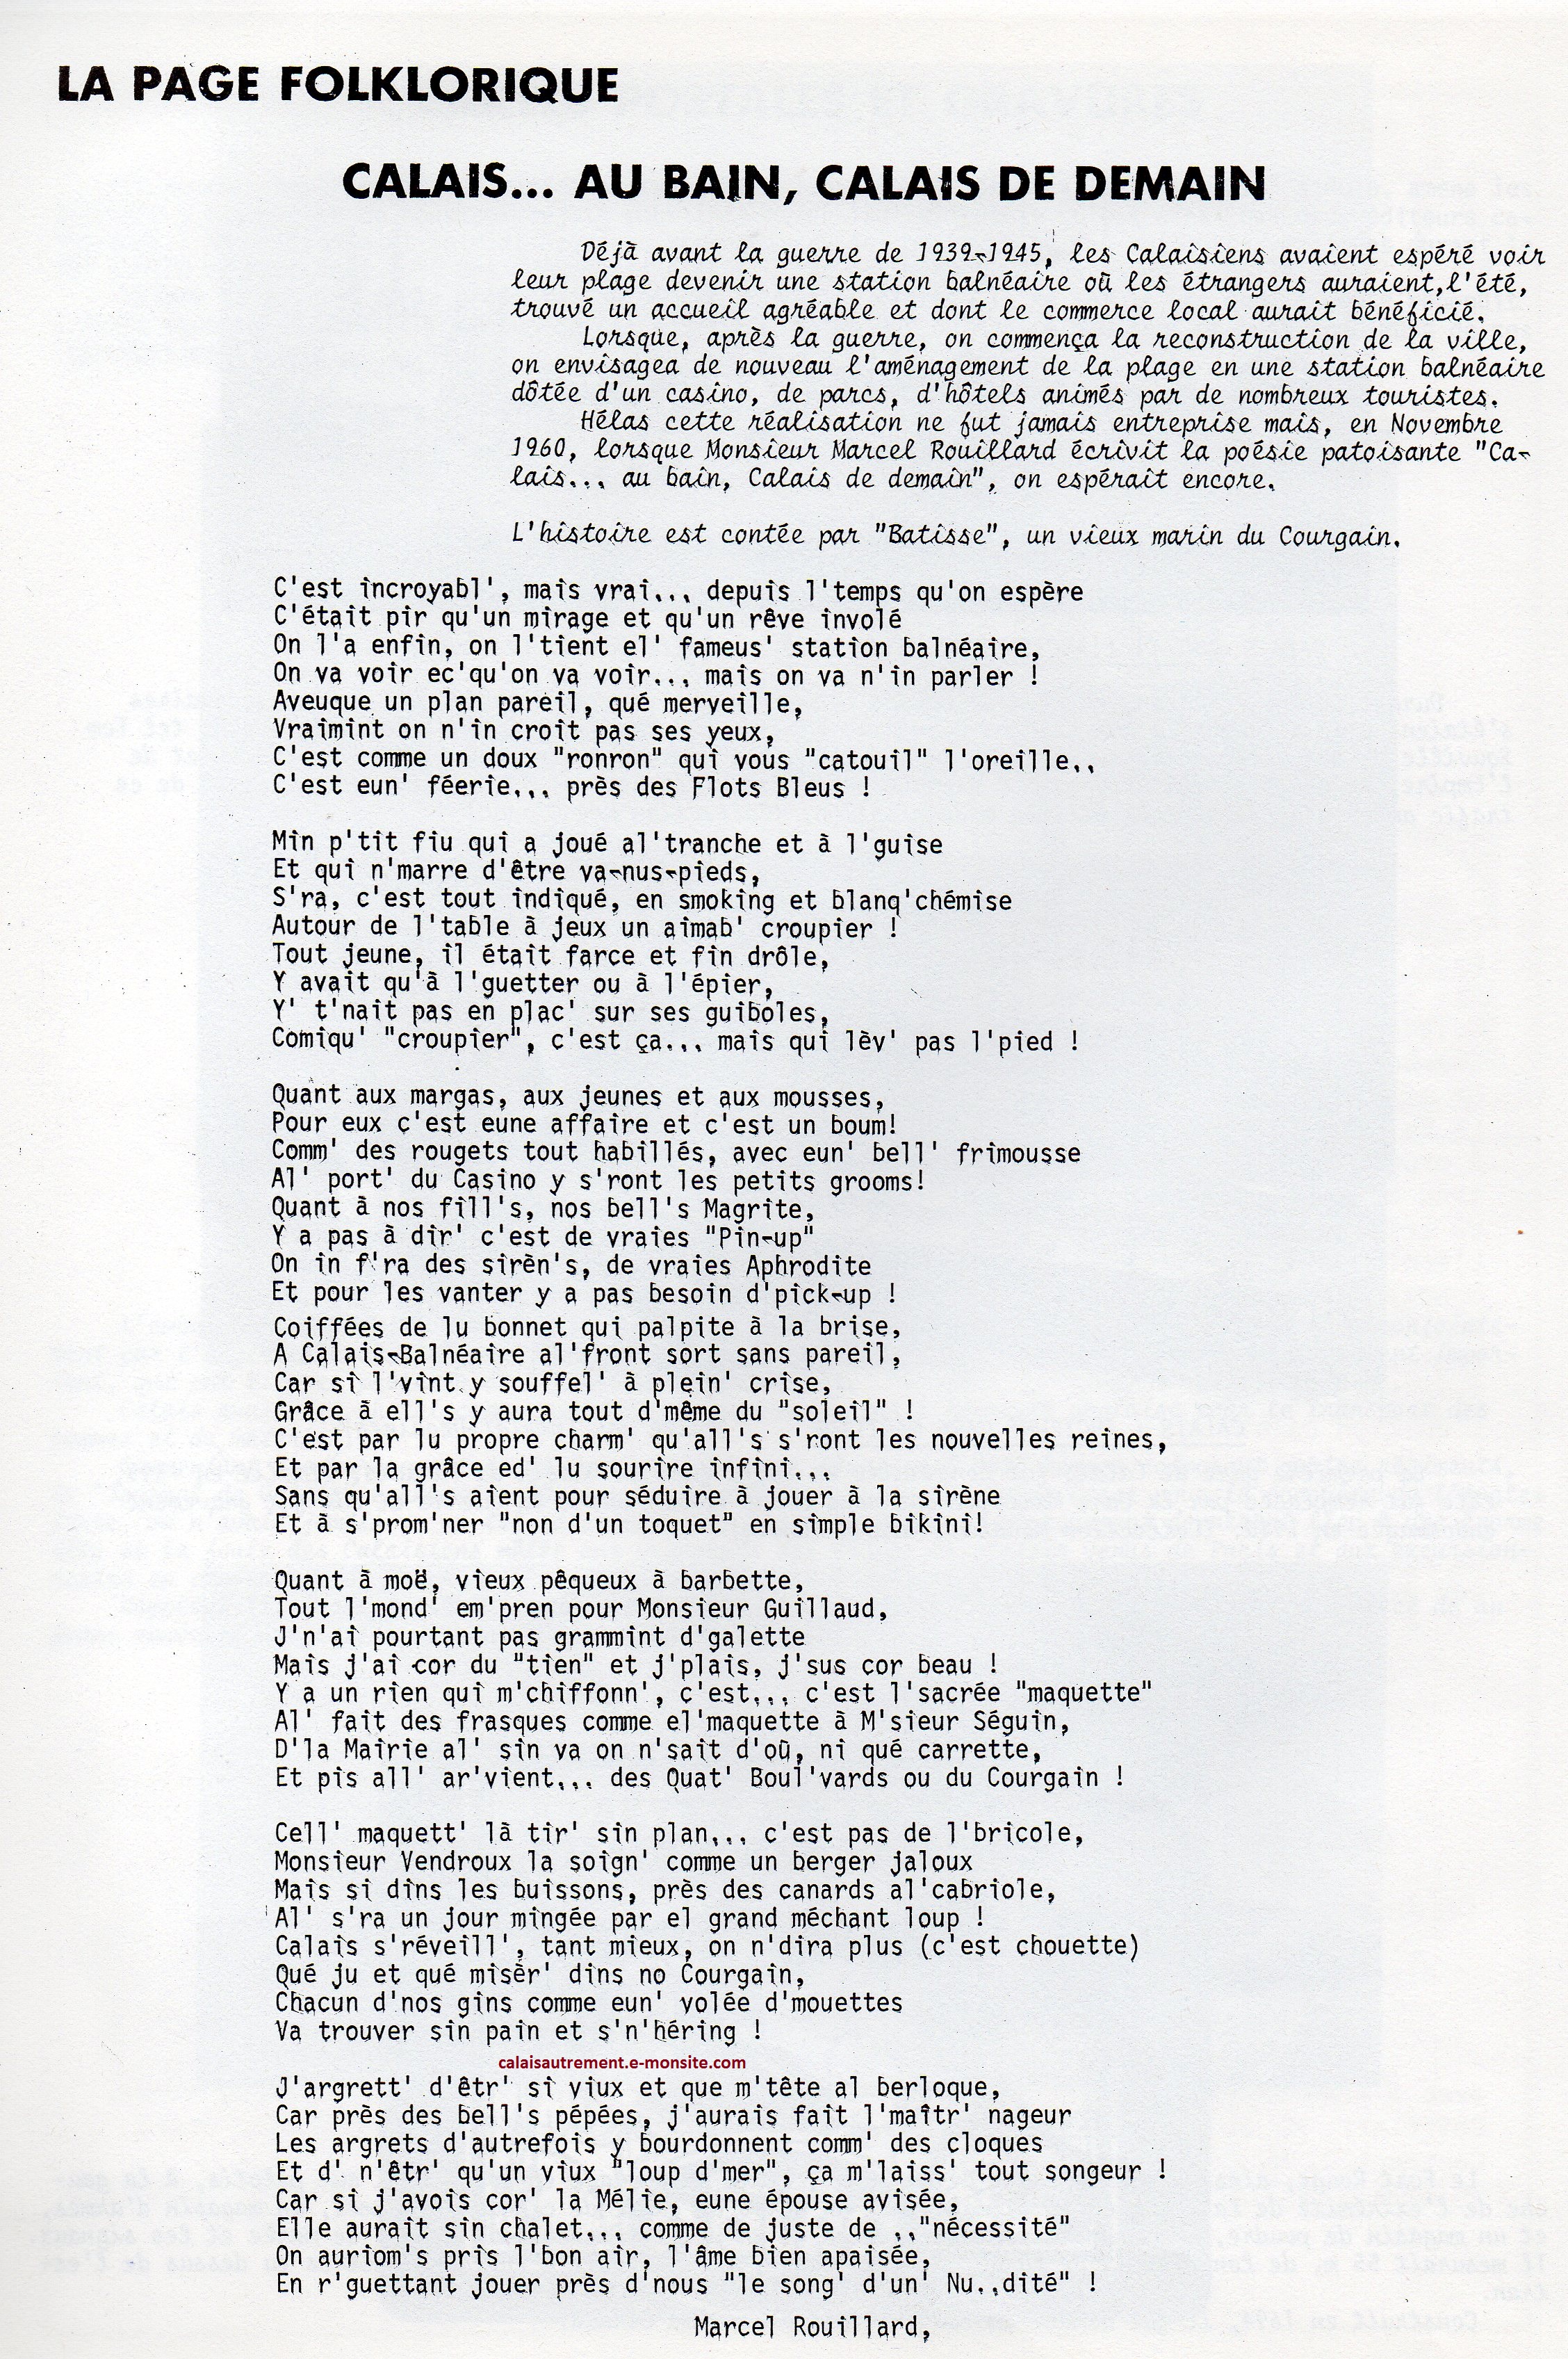 Mémoire poétique de 1960 de Marcel Rouillard contée par Batisse le marin du Courgain